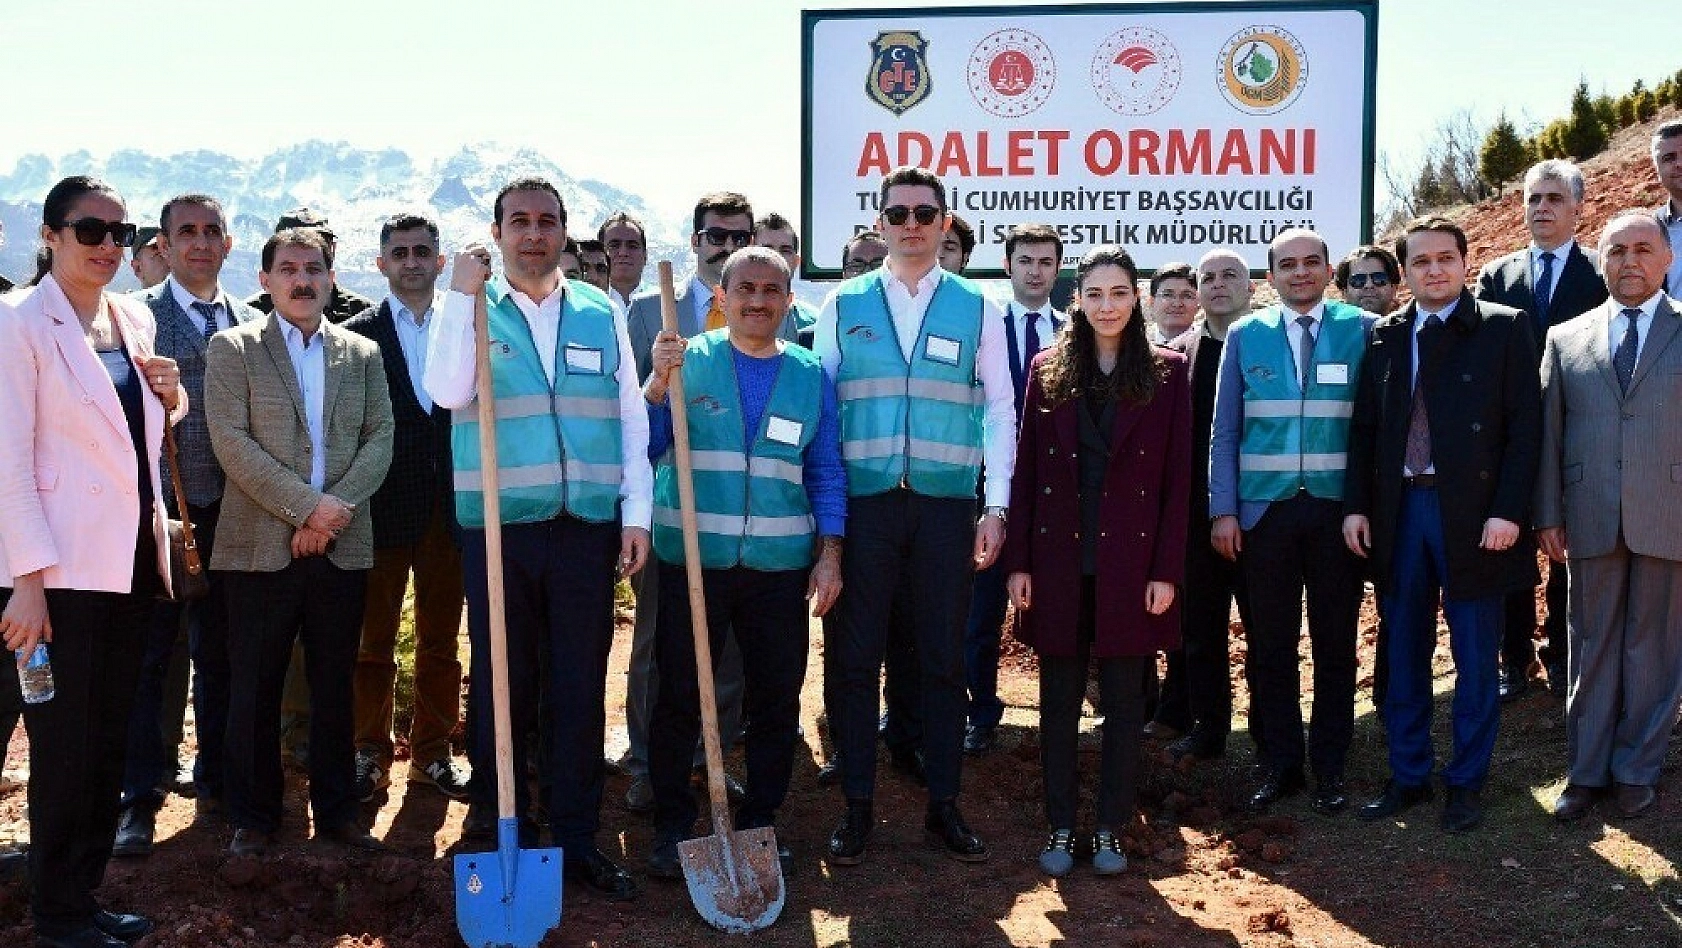 Tunceli'de 'Adalet Ormanı' oluşturuldu 